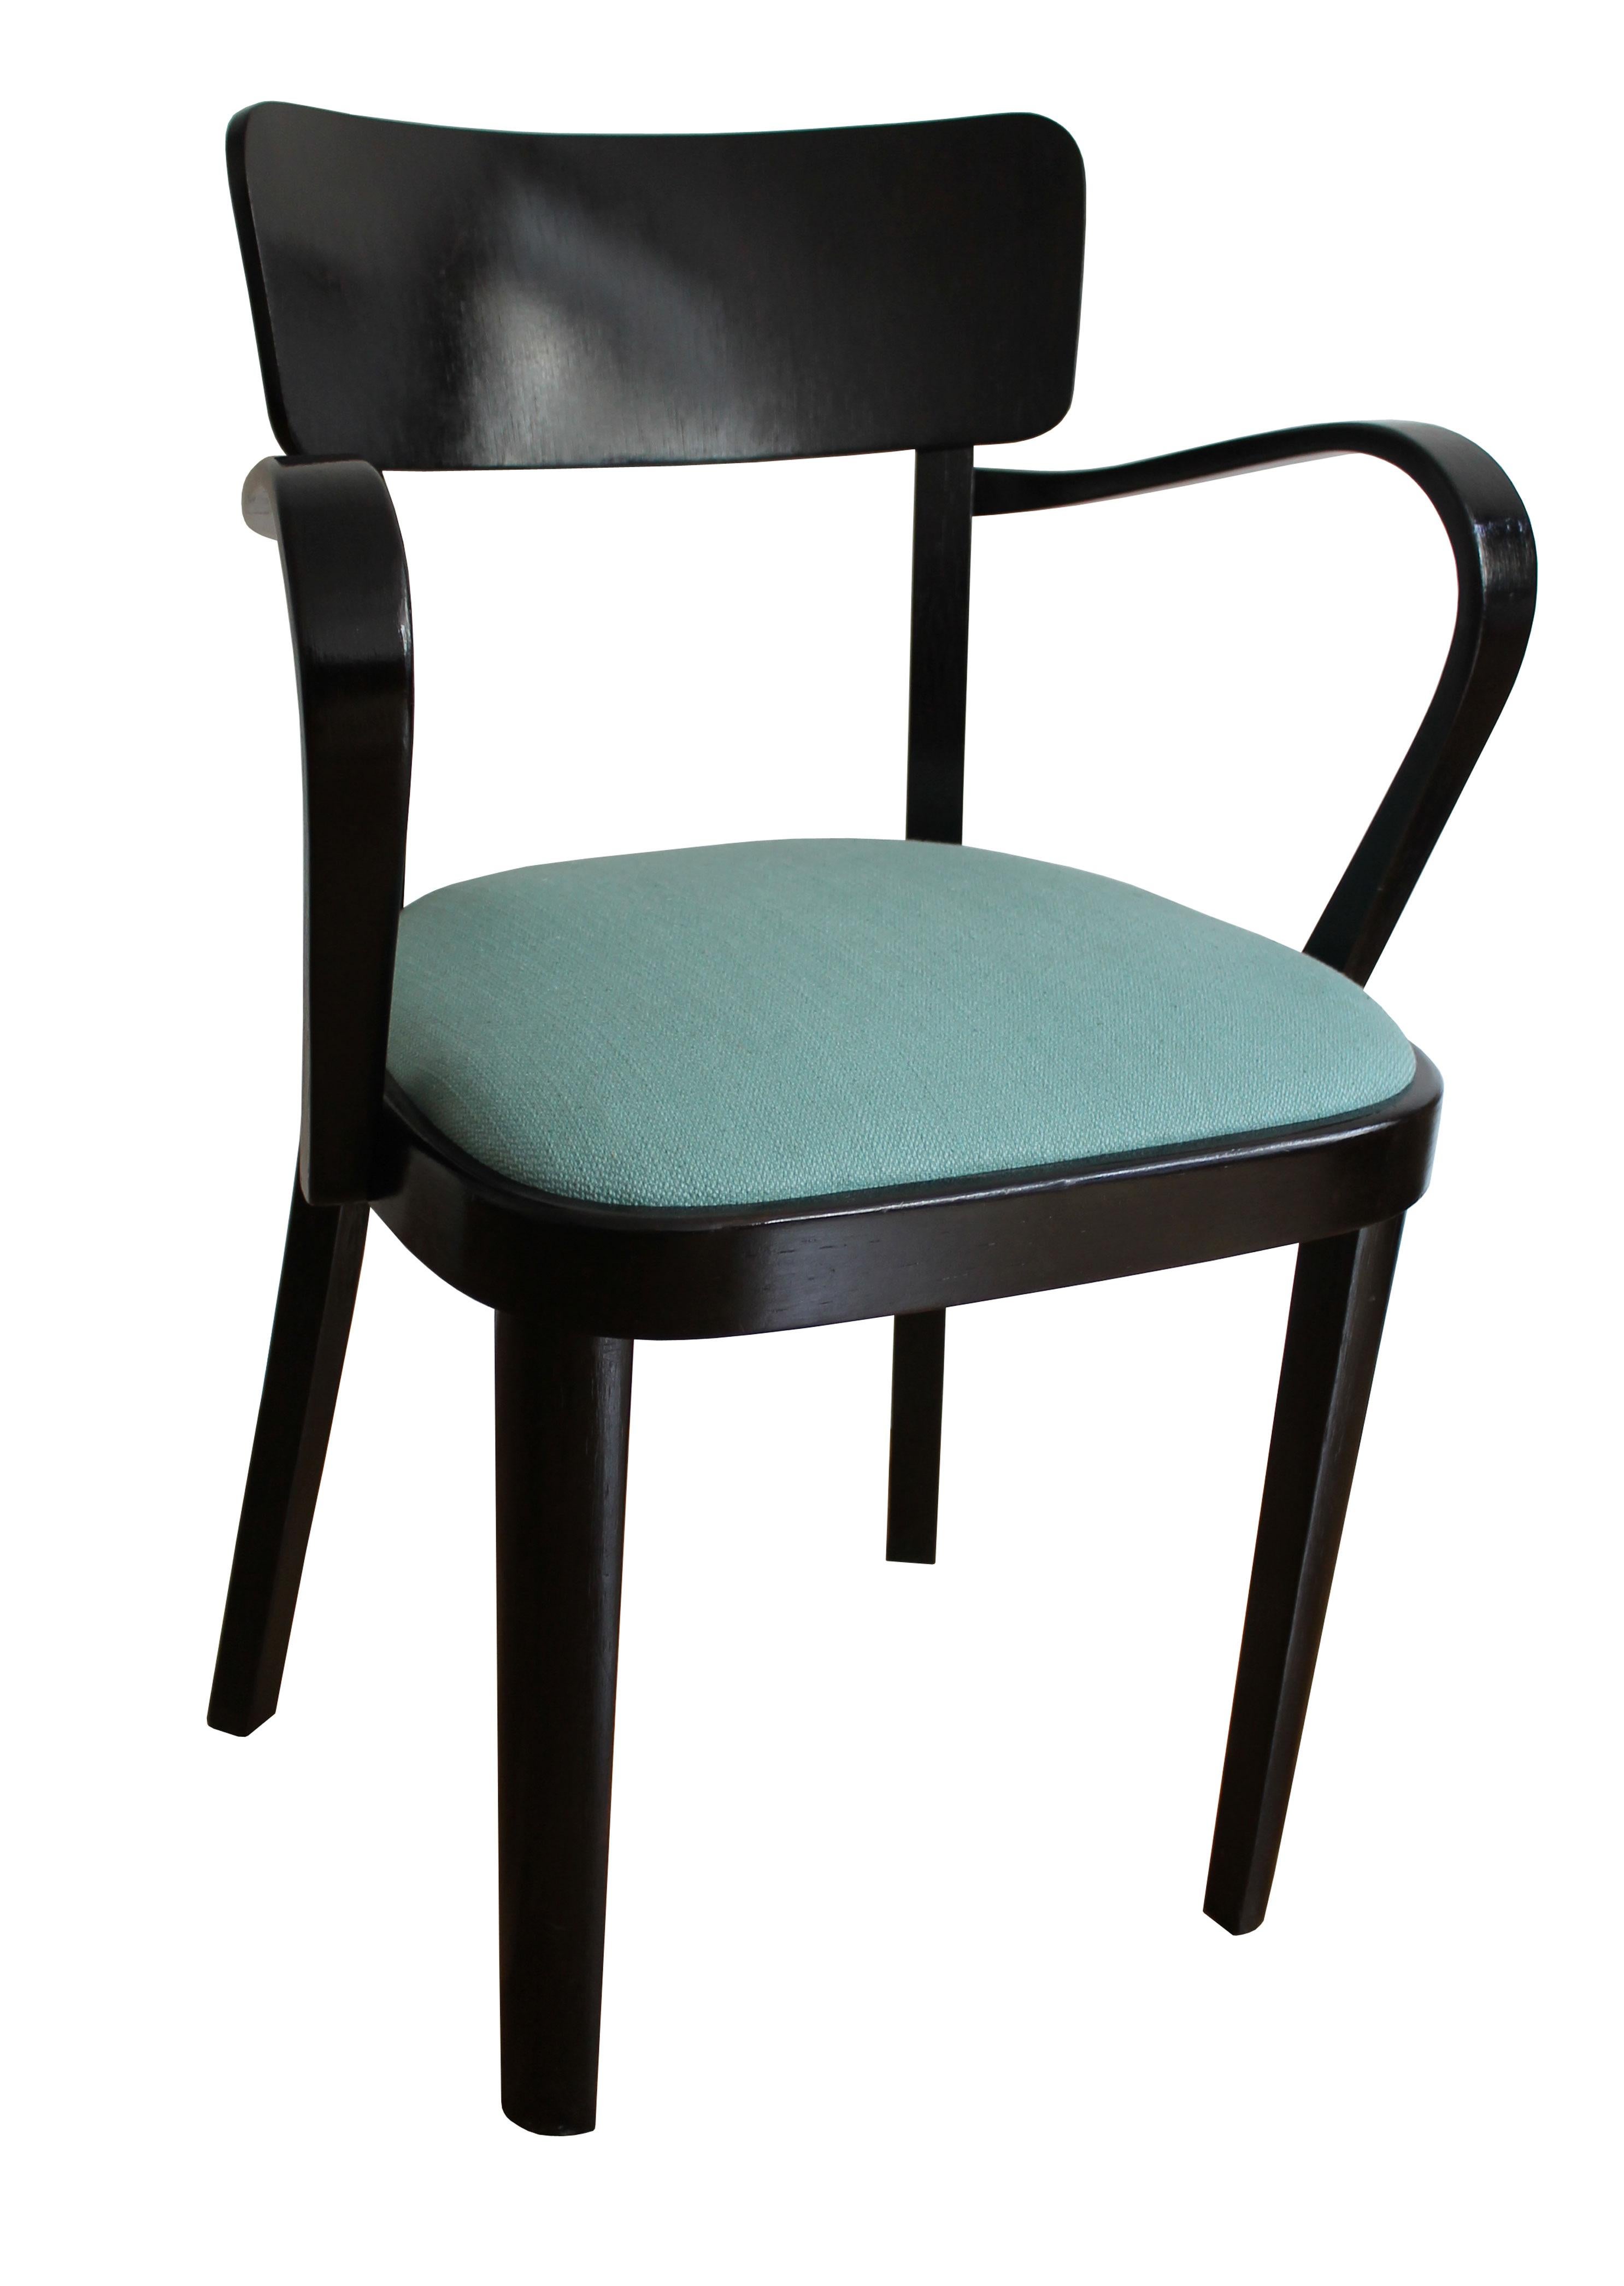 Il s'agit d'une chaise originale produite à la fin des années 1940. La chaise n'a plus de Label mais nous pensons qu'elle a été produite par la société Thonet dans l'une de ses usines de l'ancienne Tchécoslovaquie. 

Nous pensons également que cette